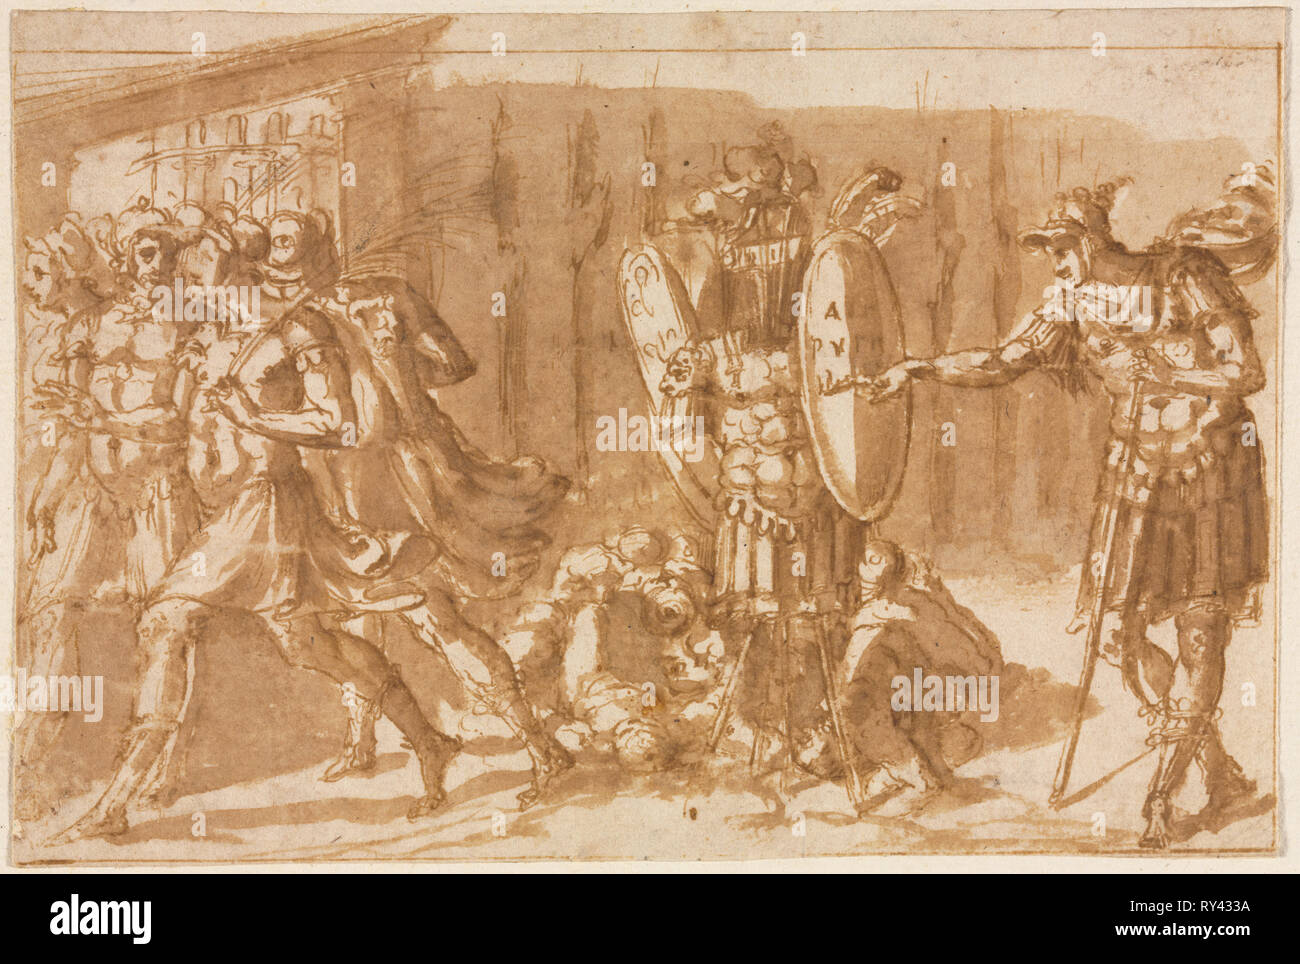 Siegreichen Soldaten mit Pokal, 1550 s. Pellegrino Tibaldi (Italienisch, 1527-1596). Pen und braune Tusche und Pinsel und Braun waschen, Framing Linien in Bister; Blatt: 13,7 x 20,2 cm (5 3/8 x 7 15/16 in.); sekundäre Support: 13,7 x 20,2 cm (5 3/8 x 7 15/16 in.); Tertiärsektor: 21,8 x 27,7 cm (8 9/16 x 10 7/8 in Stockfoto